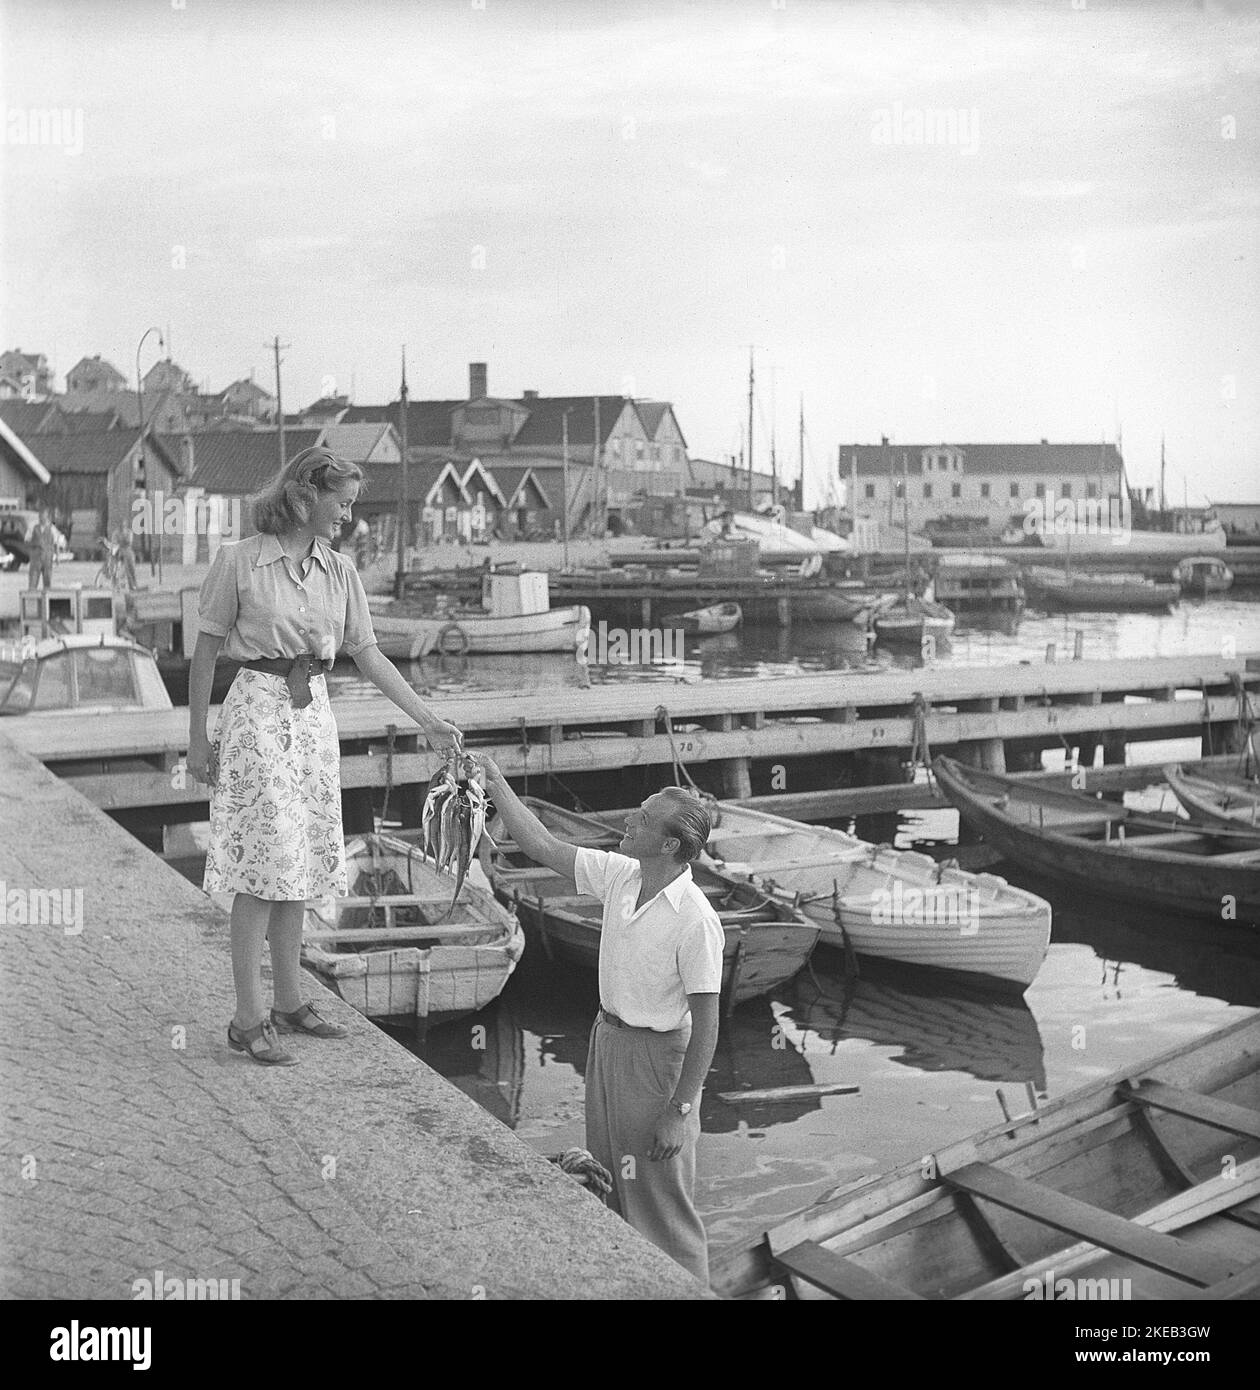 In der 1940s. Eine Szene, die während der Dreharbeiten zu einem Film in Bohuslän Schweden aufgenommen wurde. Sie schüchtern Fischer gespielt von Olle Tärna gibt dem Mädchen seiner Träume Fisch. Eine Art Balz, die zu einer Romanze geführt haben könnte. Schweden 1947. Kristoffersson AD1-10 Stockfoto